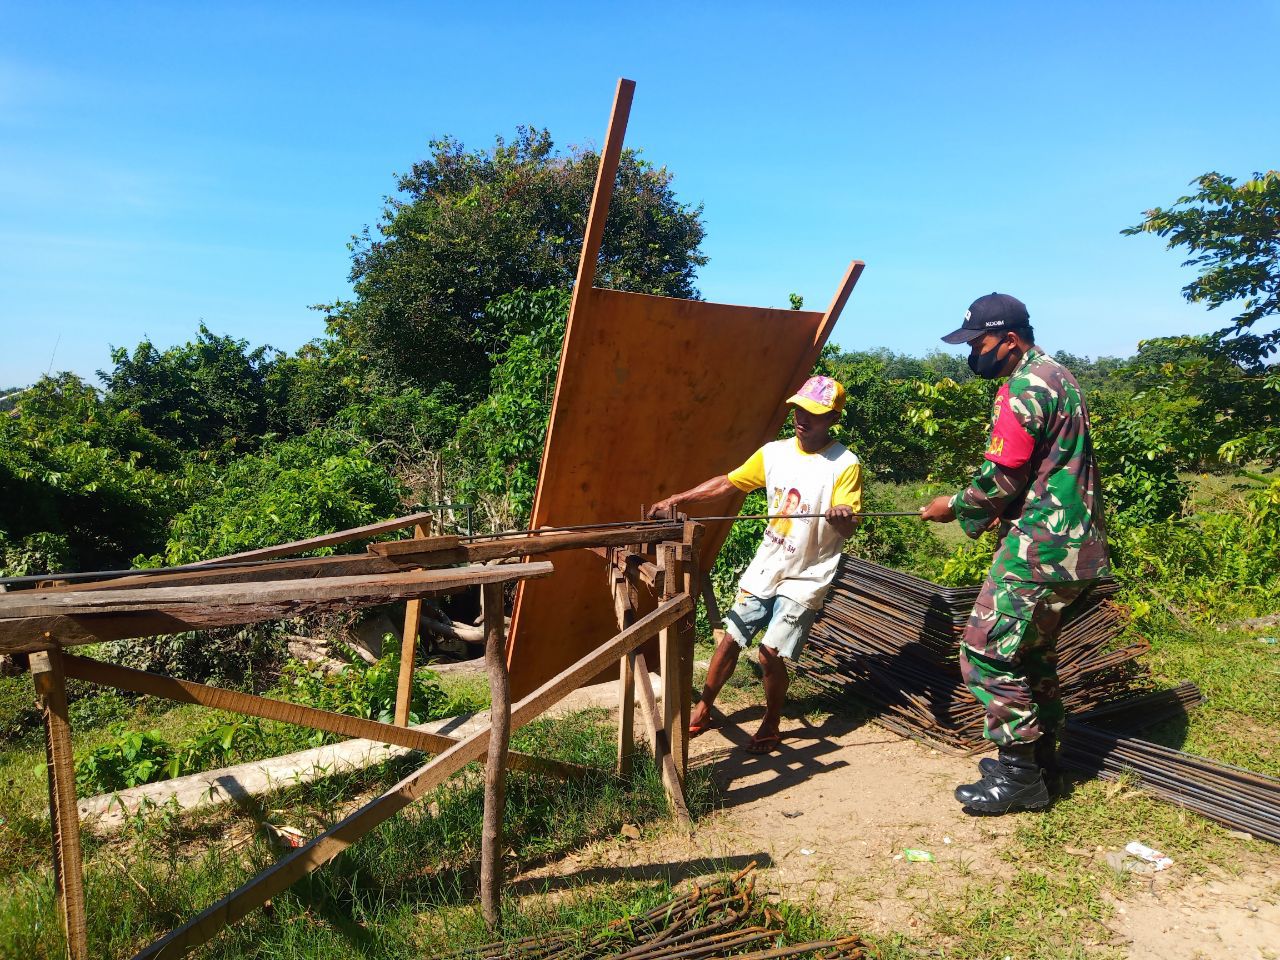 Kopda Sagita Martadi, Anggota Koramil 07 Kuantan Hilir Dim 0302 Inhu Membantu Merangkai Besi Untuk Membangun Parit